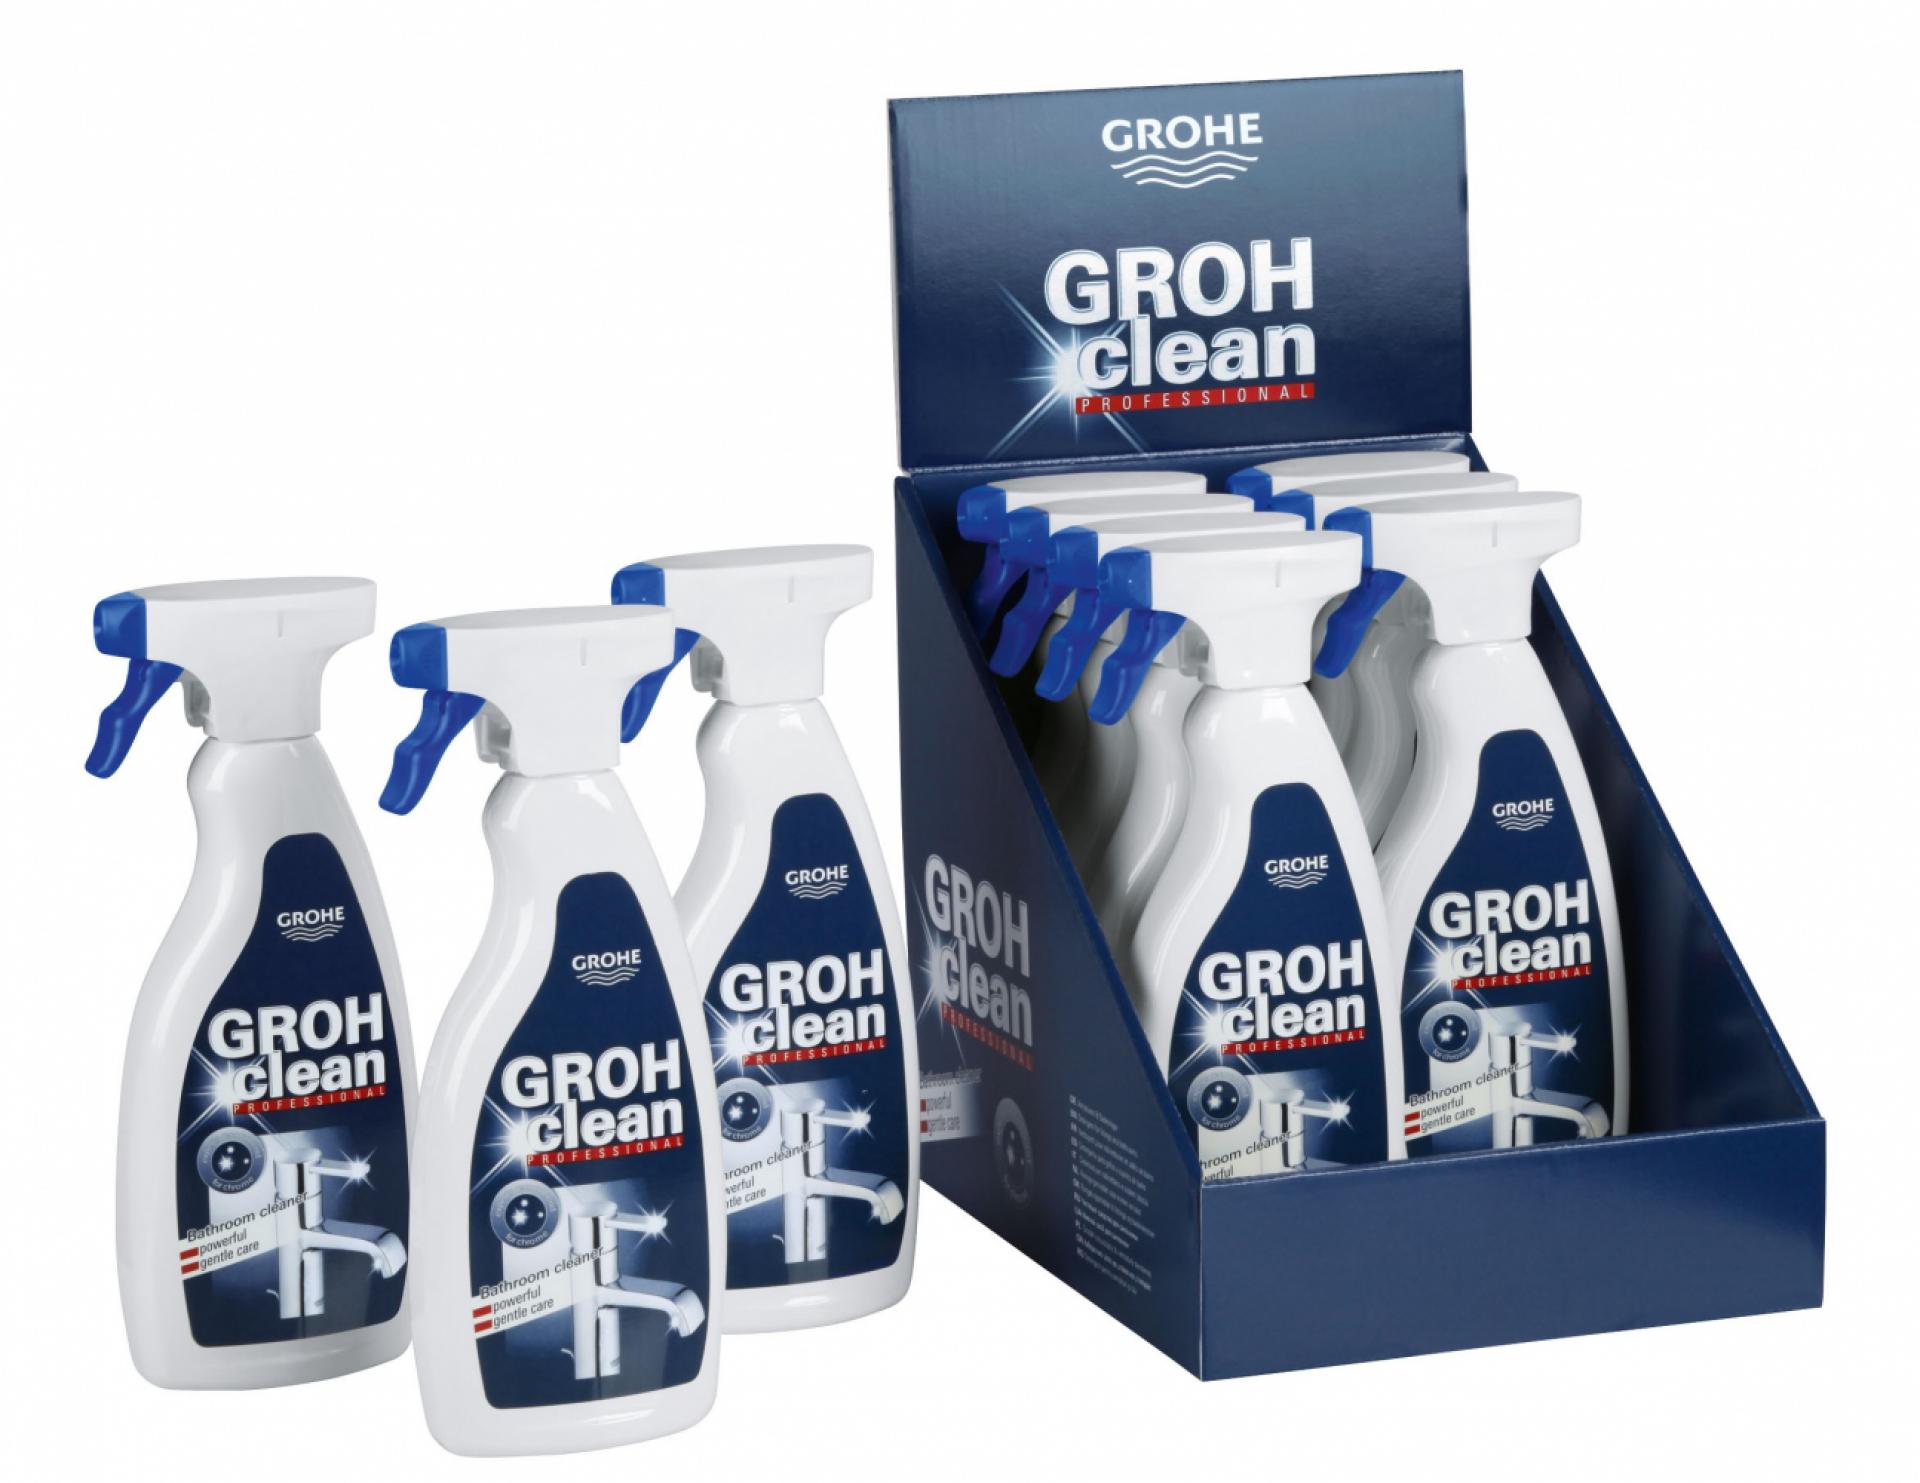 Фото - Универсальное чистящее средство Grohe GROHclean Professional 48166000 (с распылителем) - Hansgrohe